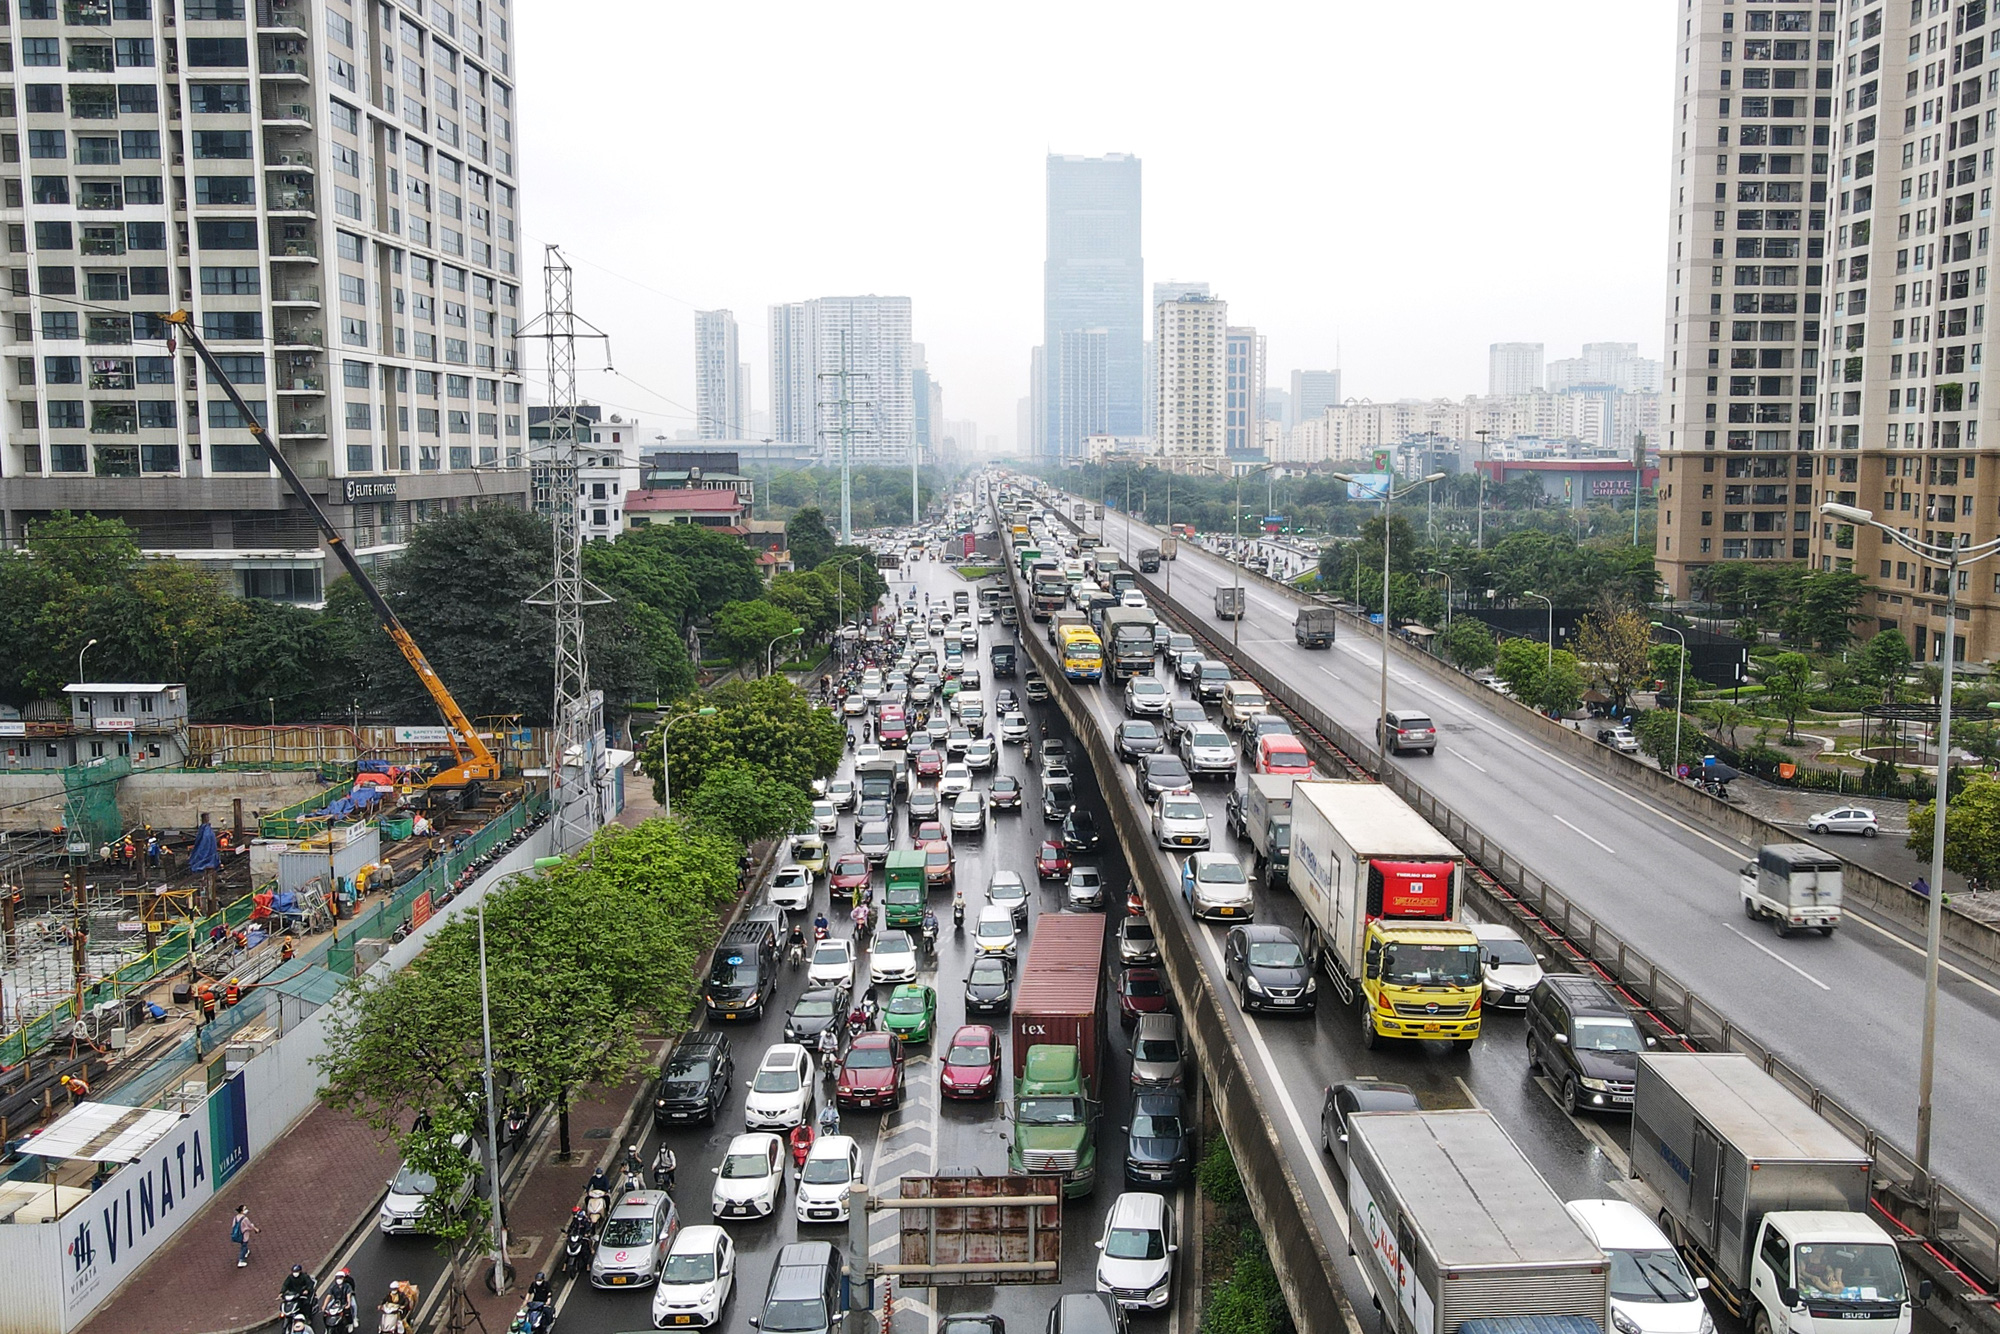 CẤP BÁO: Đường phố Hà Nội đang kẹt cứng, hàng nghìn người về quê nghỉ lễ chôn chân trong mưa - Ảnh 9.